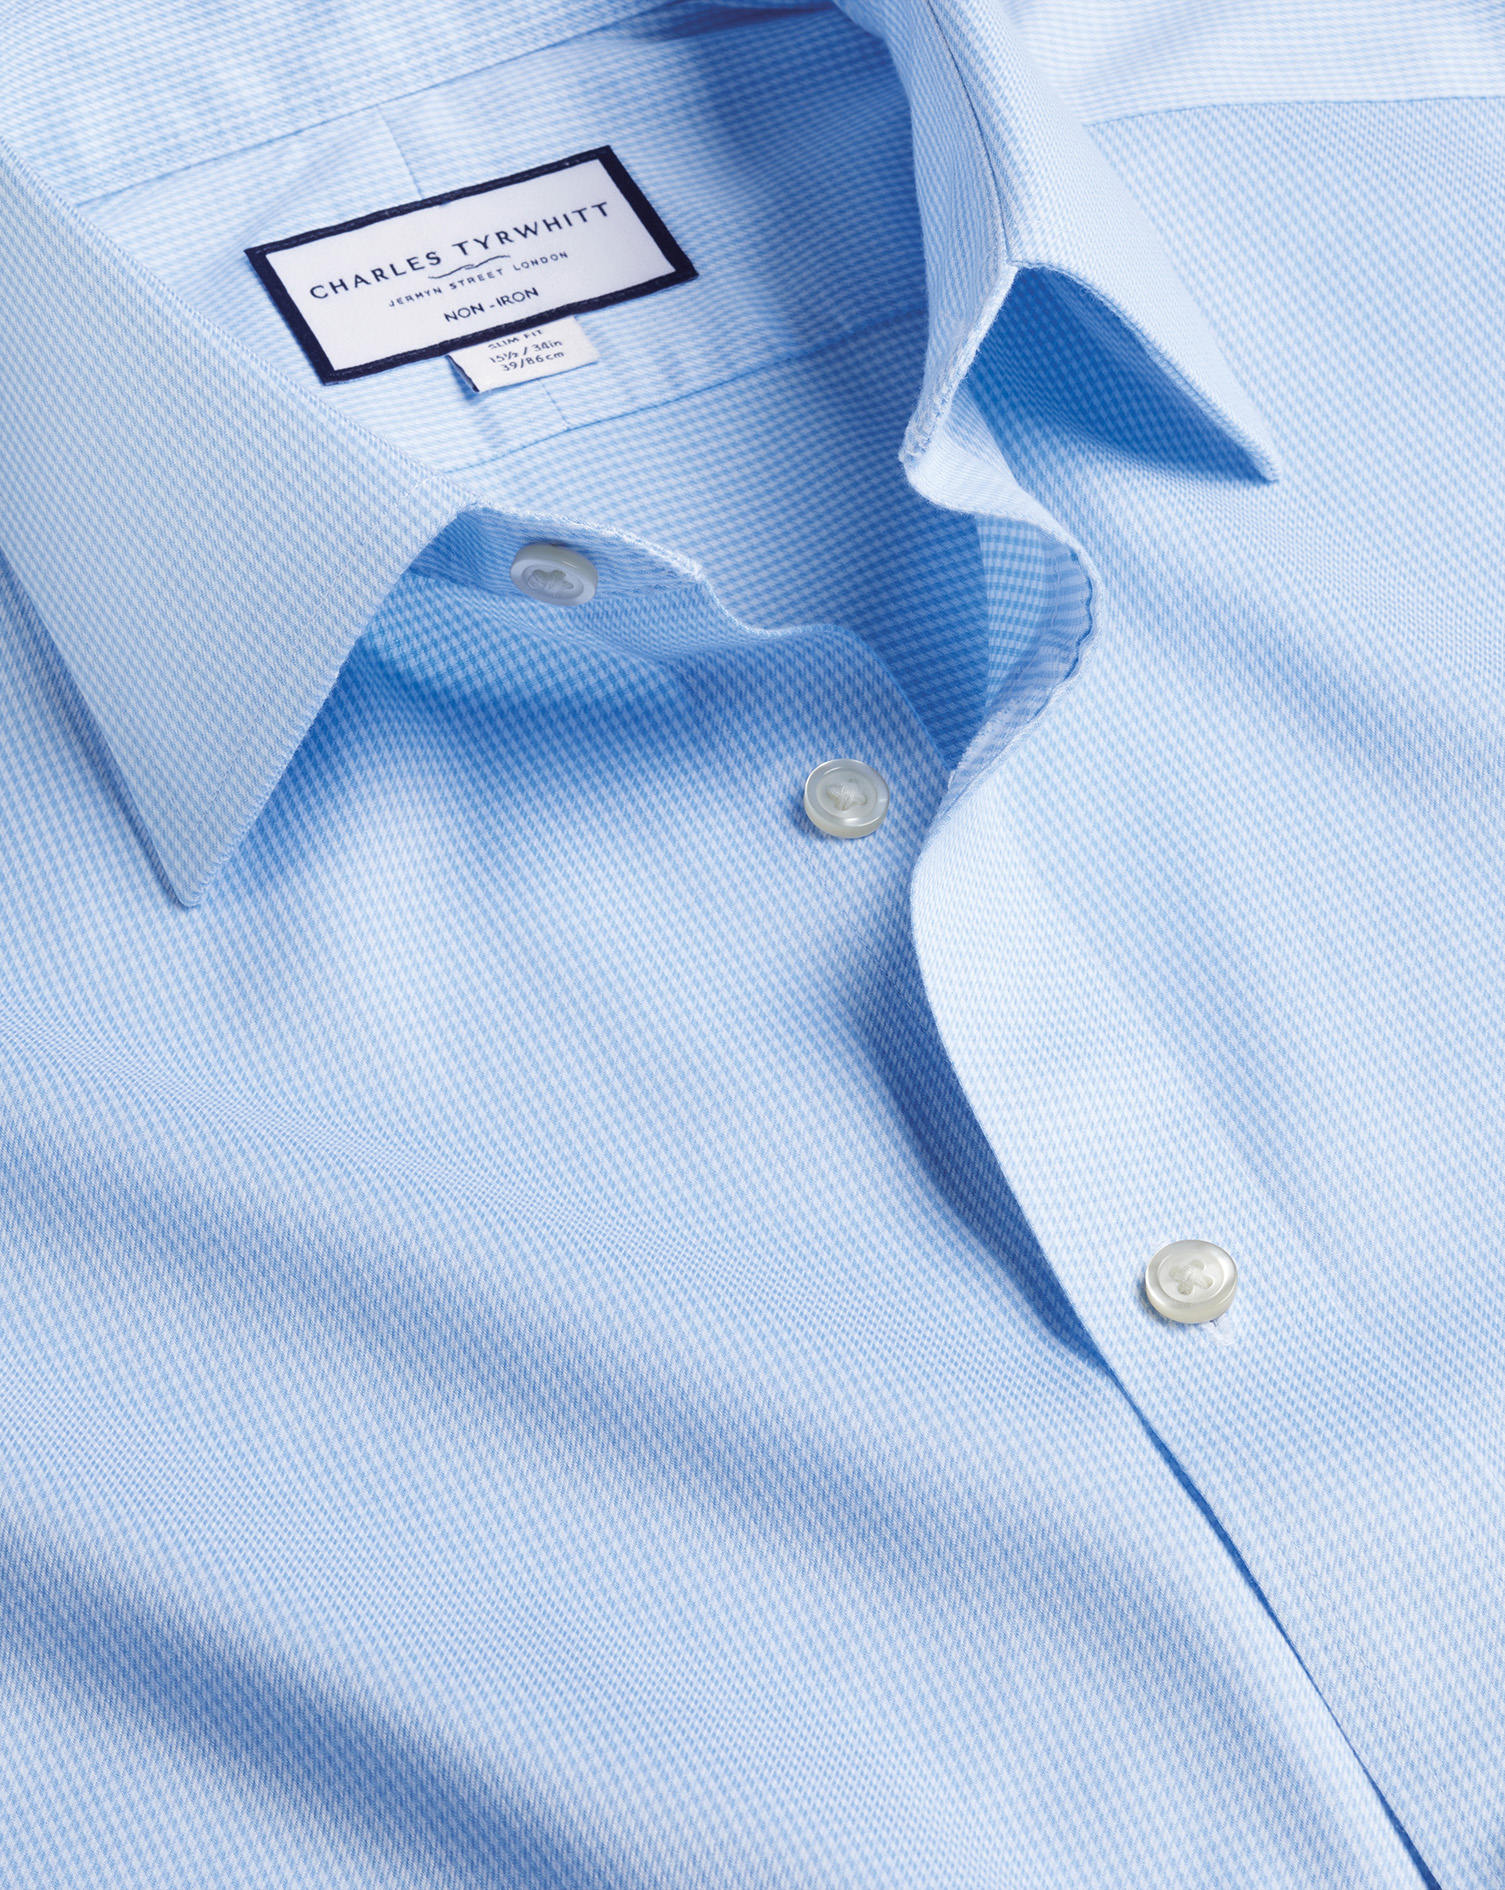 Men's Charles Tyrwhitt Non-Iron Puppytooth Dress Shirt - Sky Blue Single Cuff Size XXL Cotton
